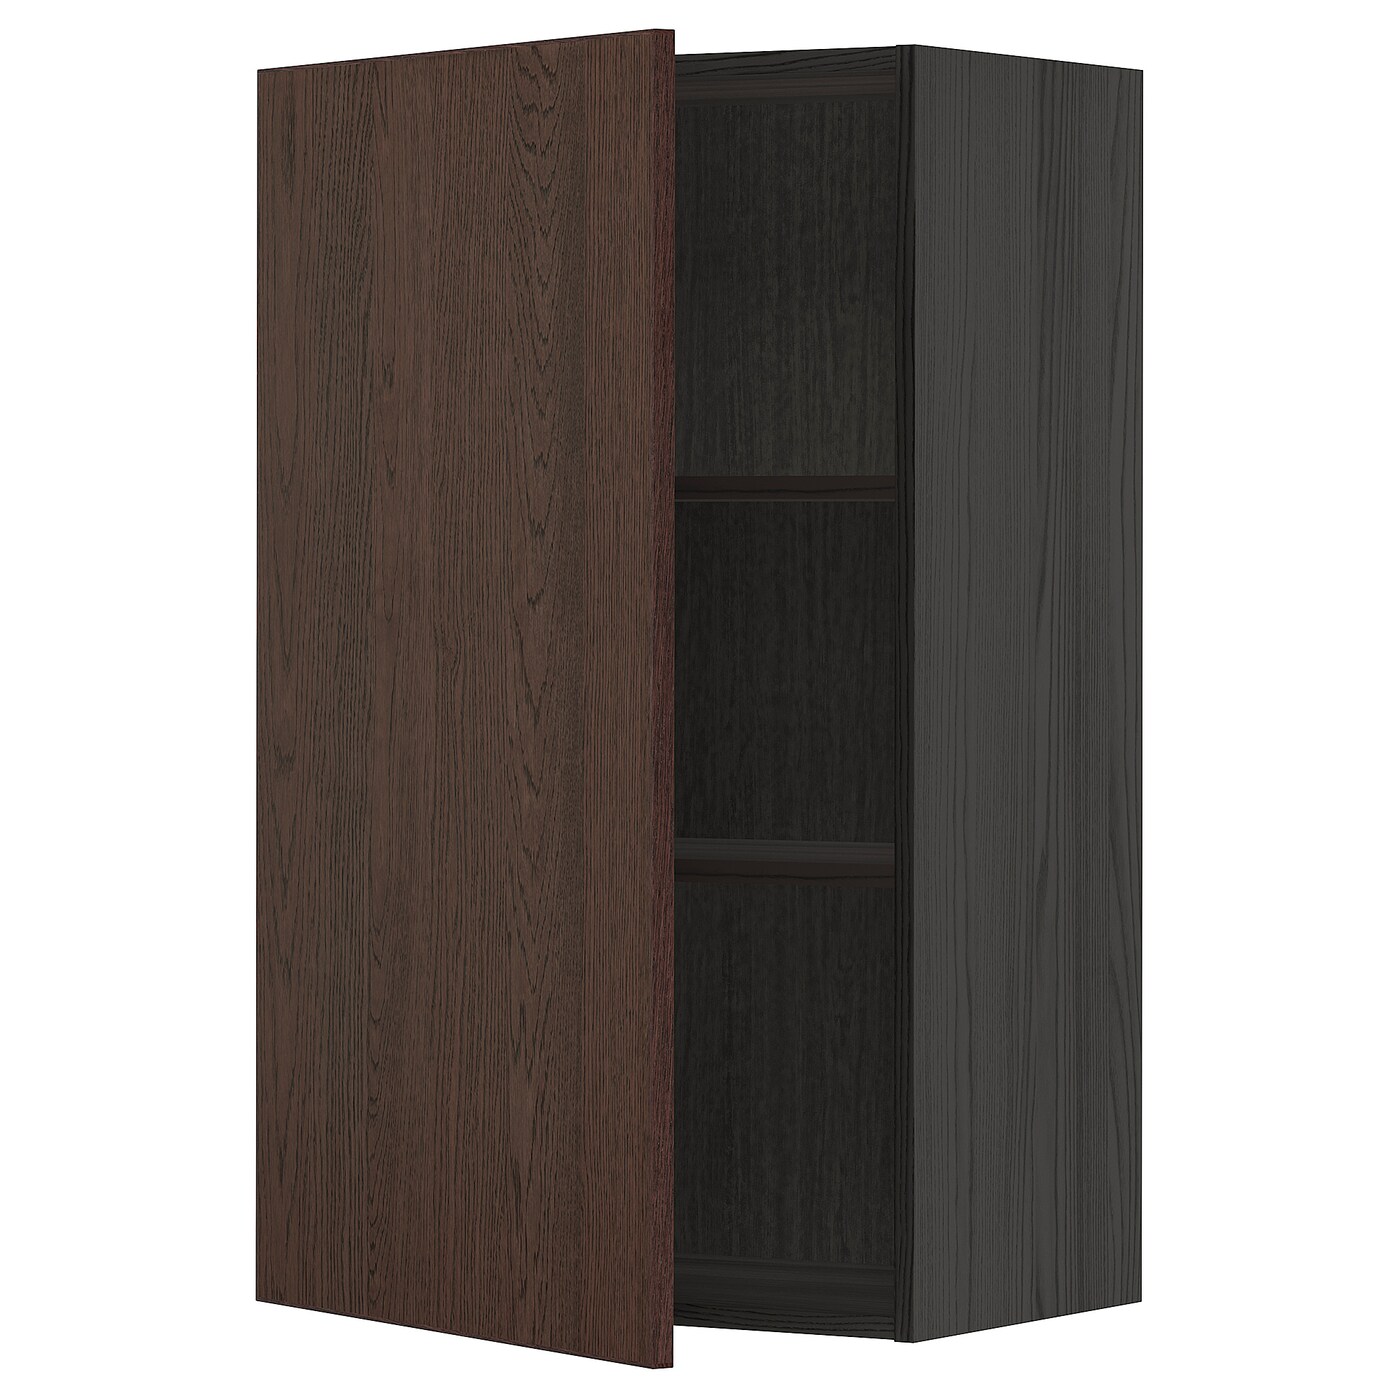 Навесной шкаф с полкой - METOD IKEA/ МЕТОД ИКЕА, 100х60 см, коричневый/черный